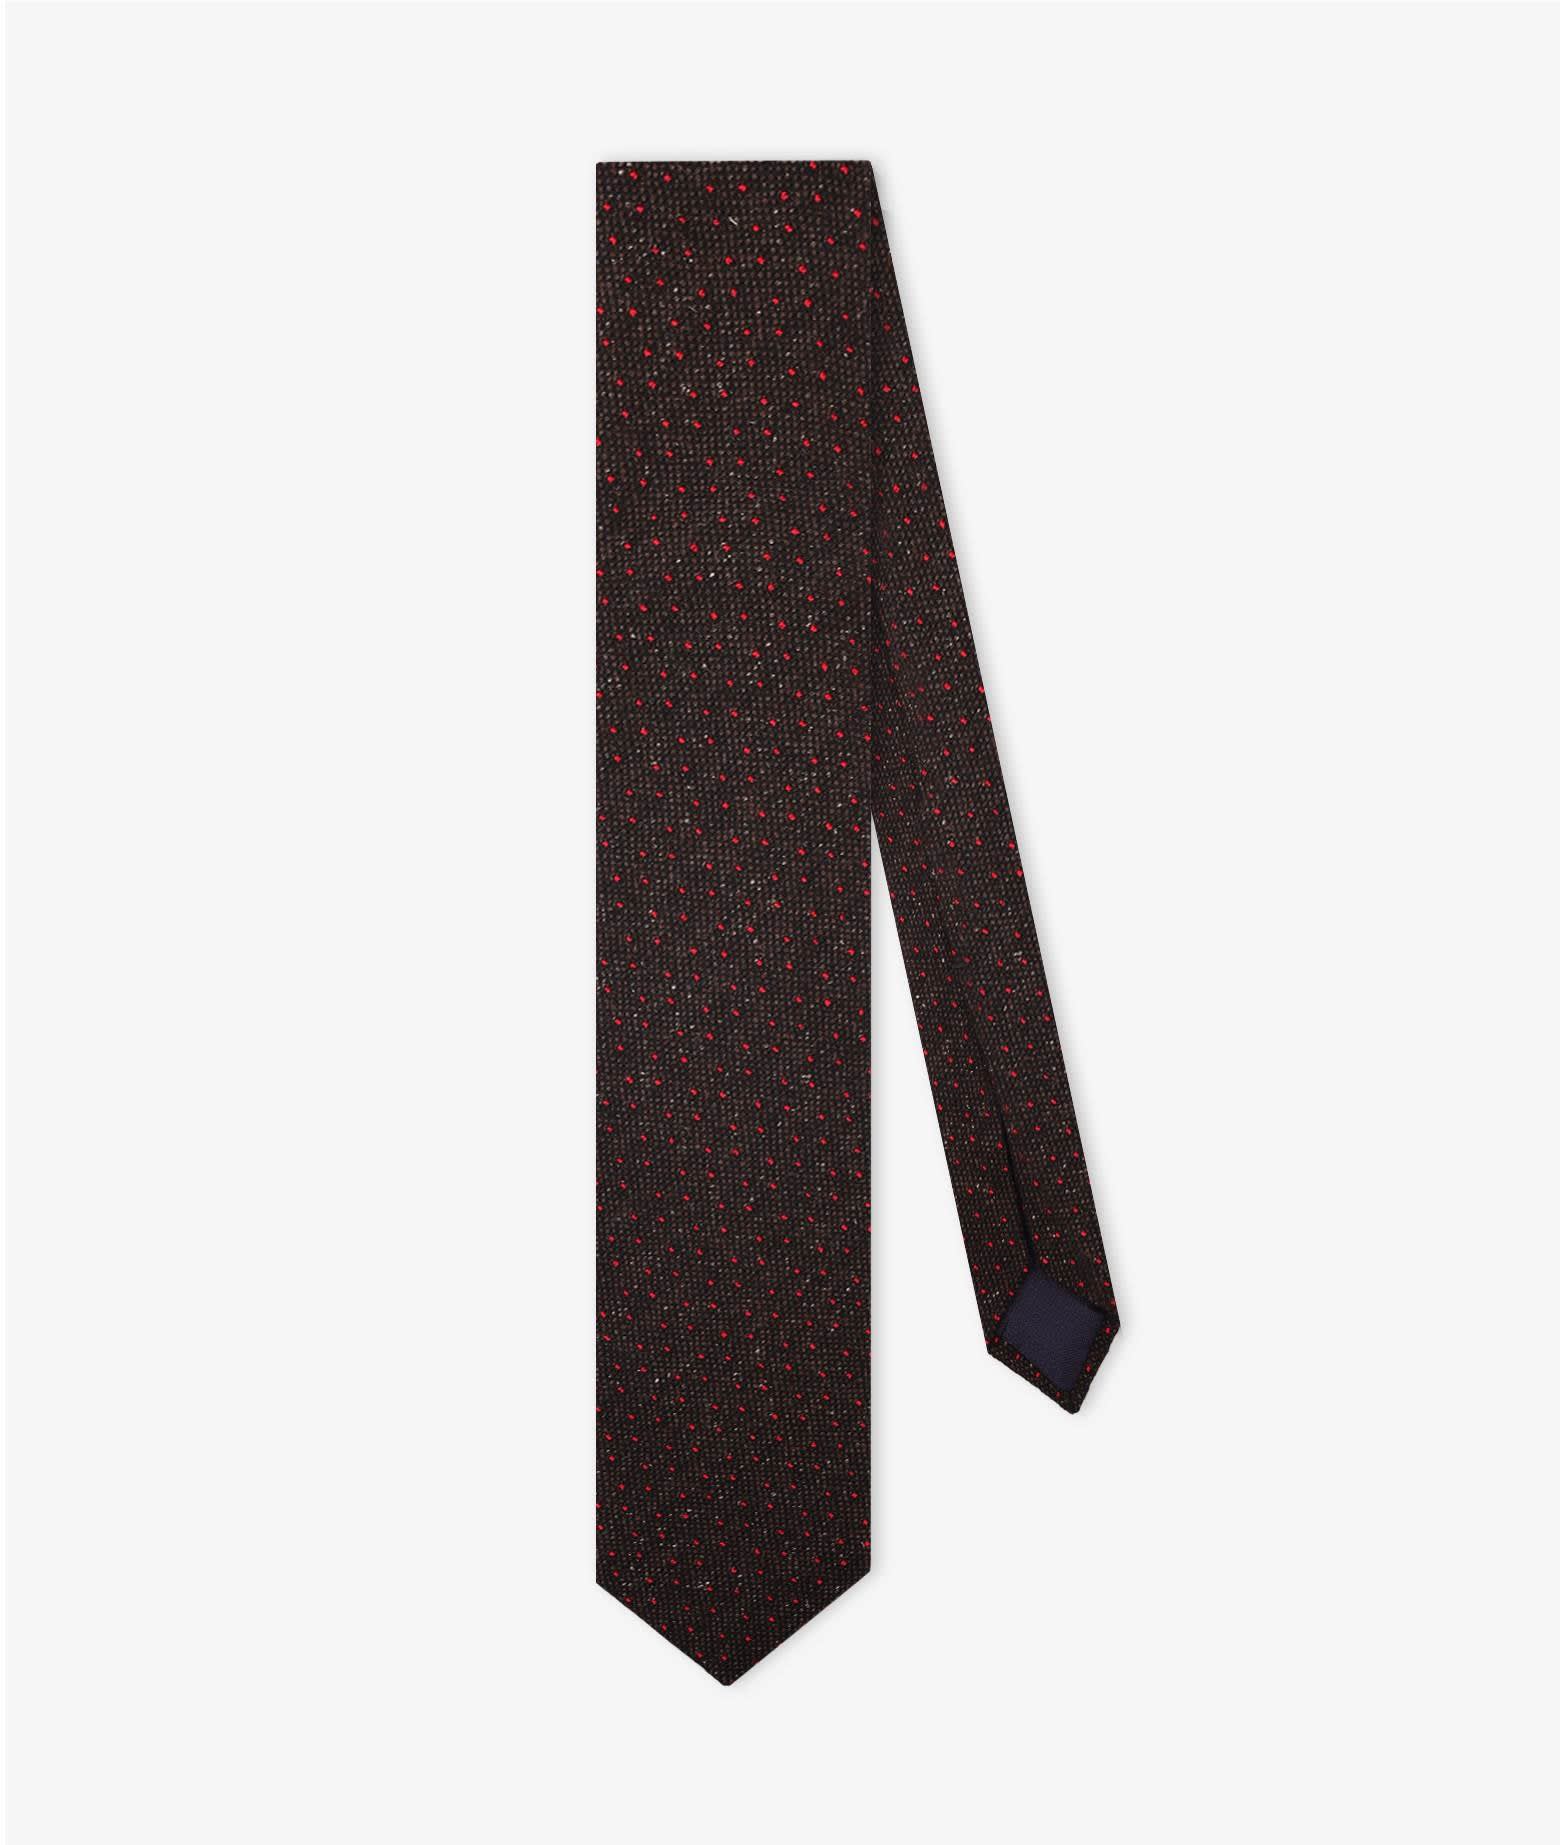 Larusmiani Seven Folds Tie Tie In Brown